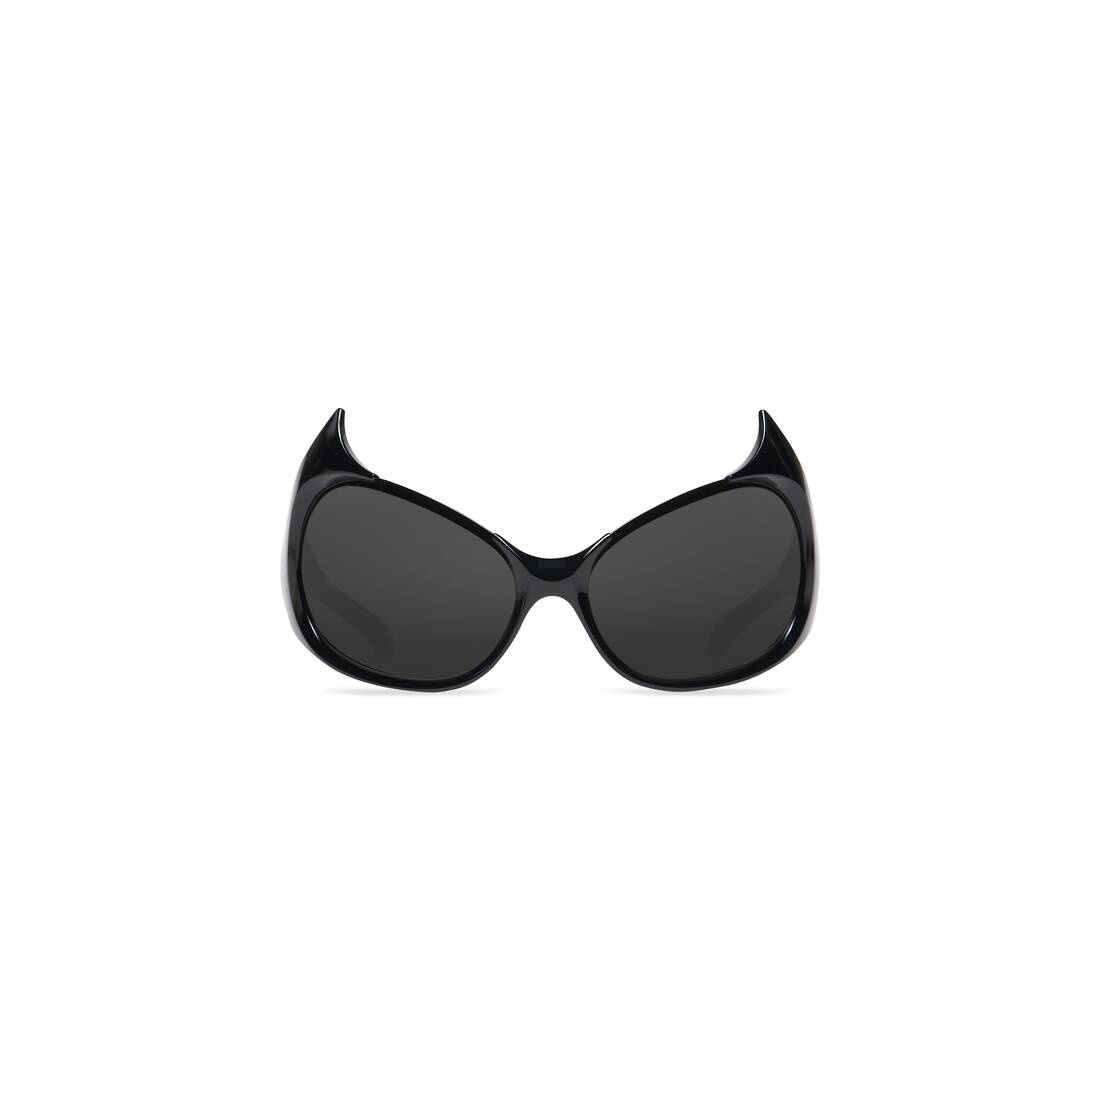 Gotham Cat Sunglasses in Black - 1